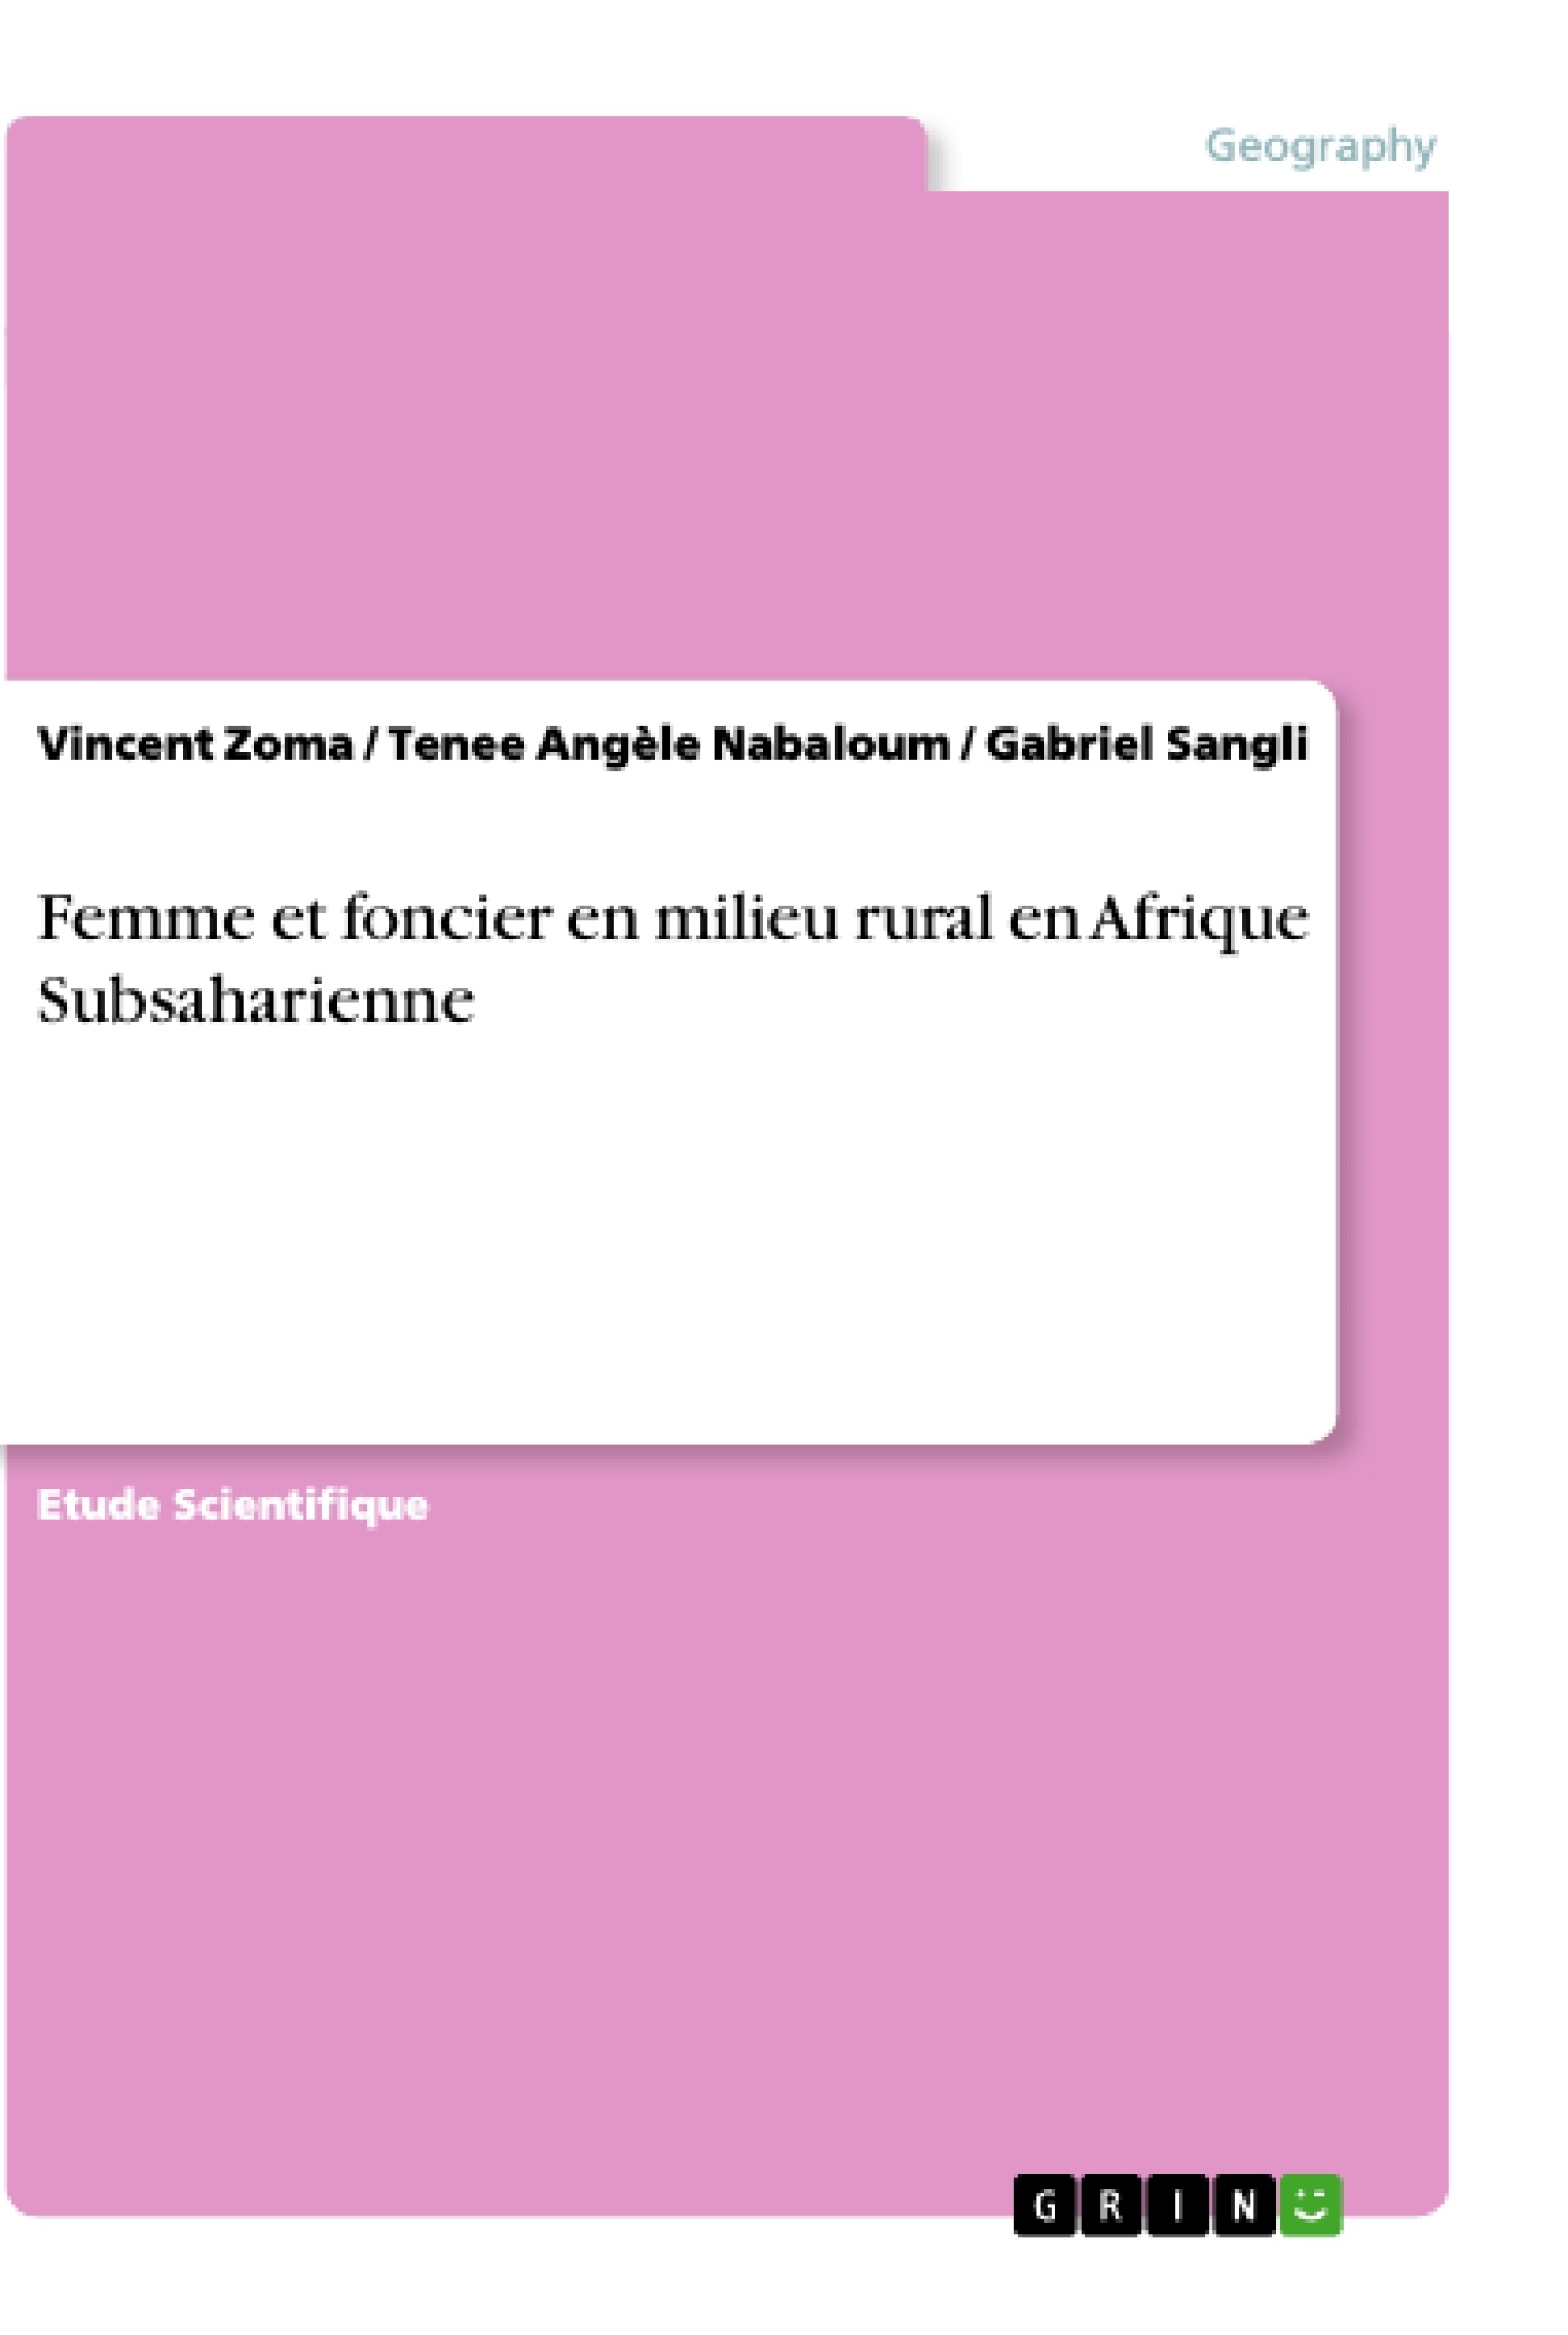 Titre: Femme et foncier en milieu rural en Afrique Subsaharienne